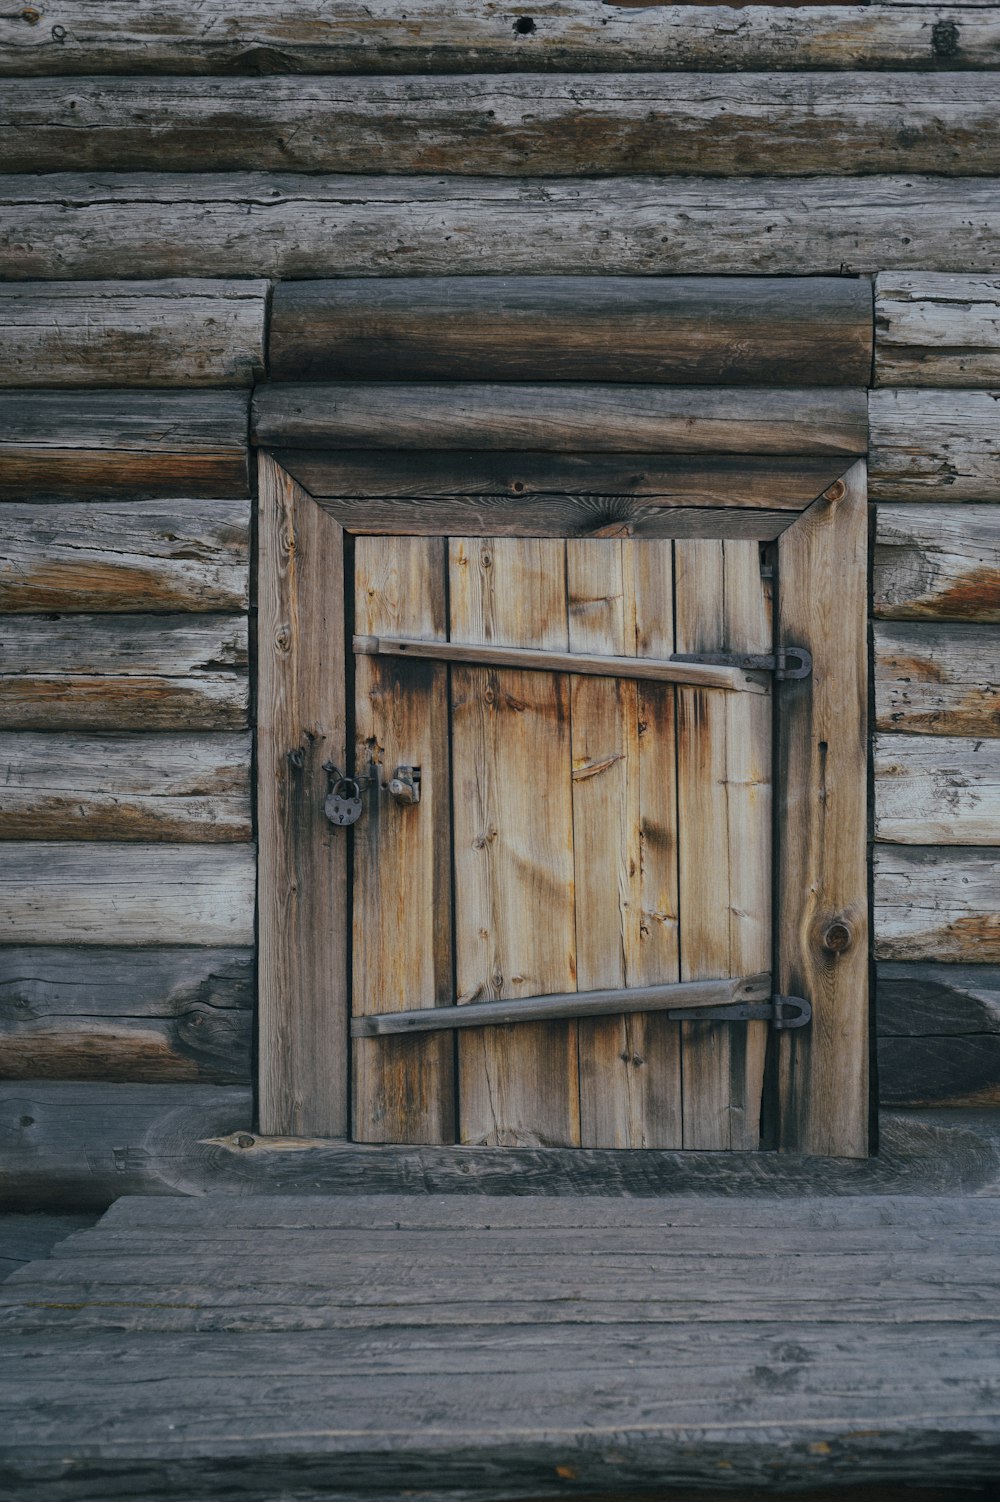 a wooden door is open in front of a log cabin